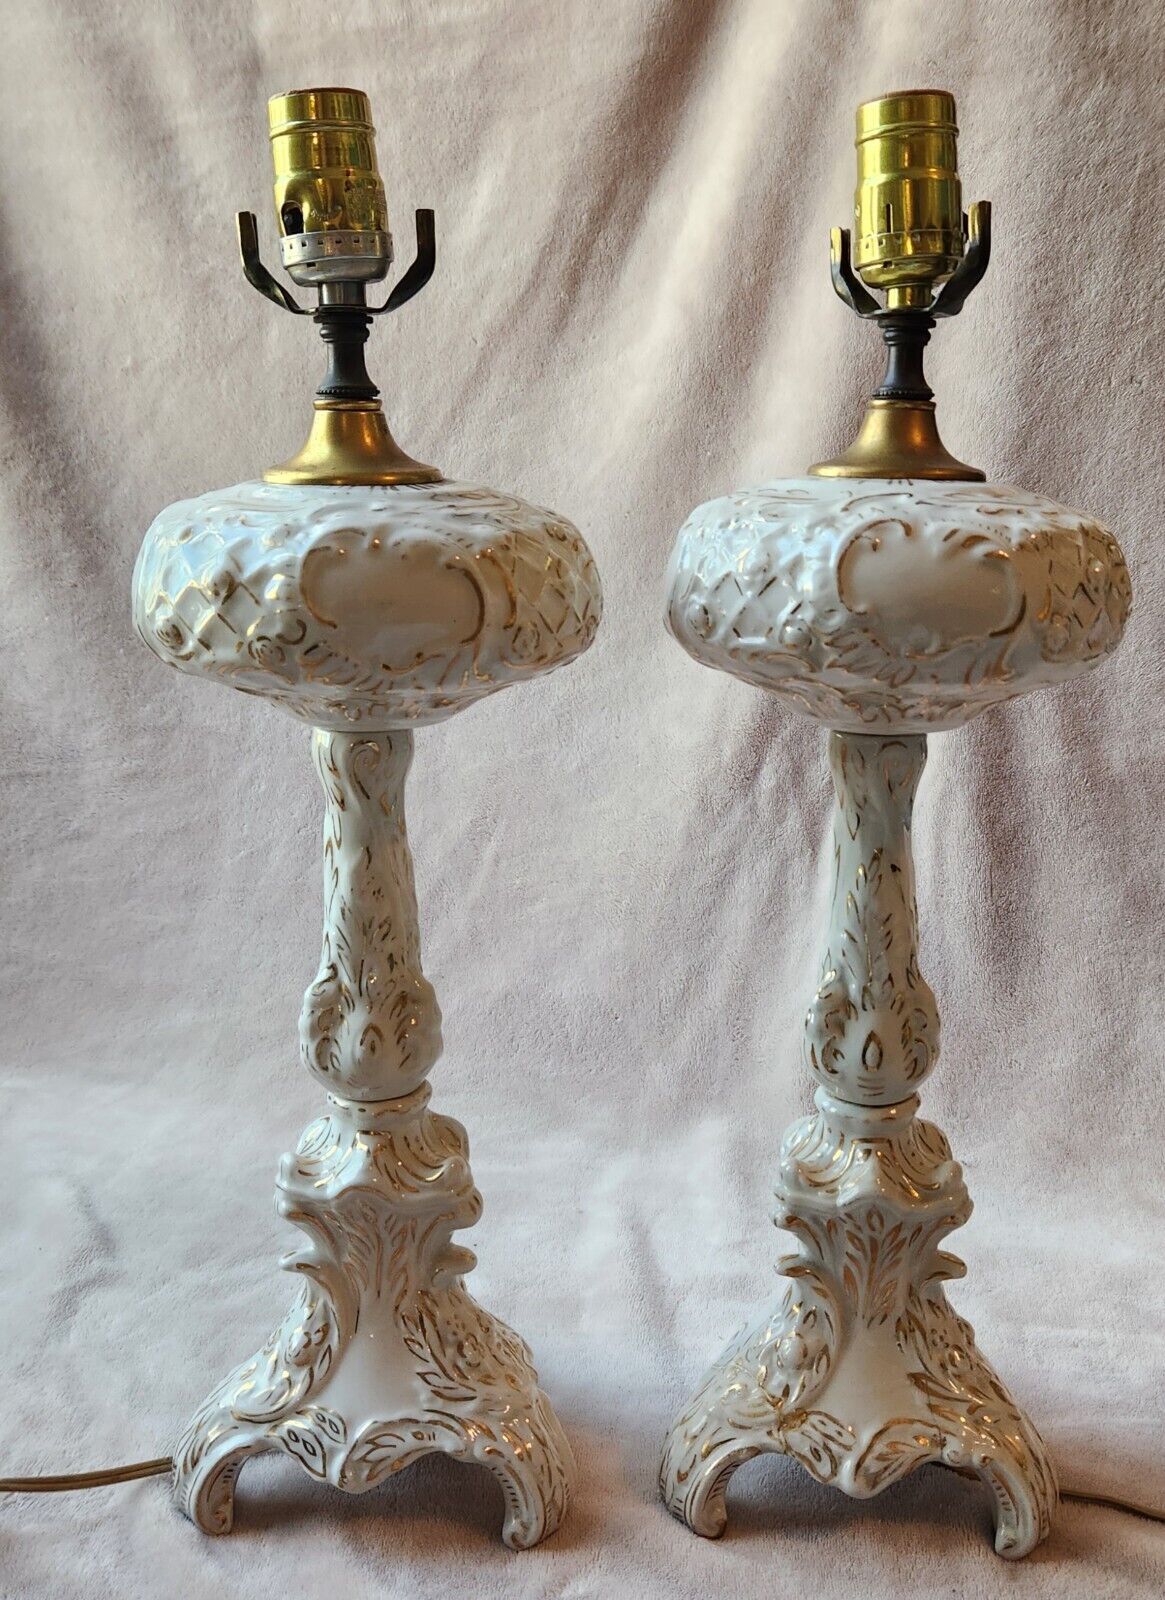 2 Antique Boudoir Bedside Table Lamps White Porcelain Gold Accents Project Piece